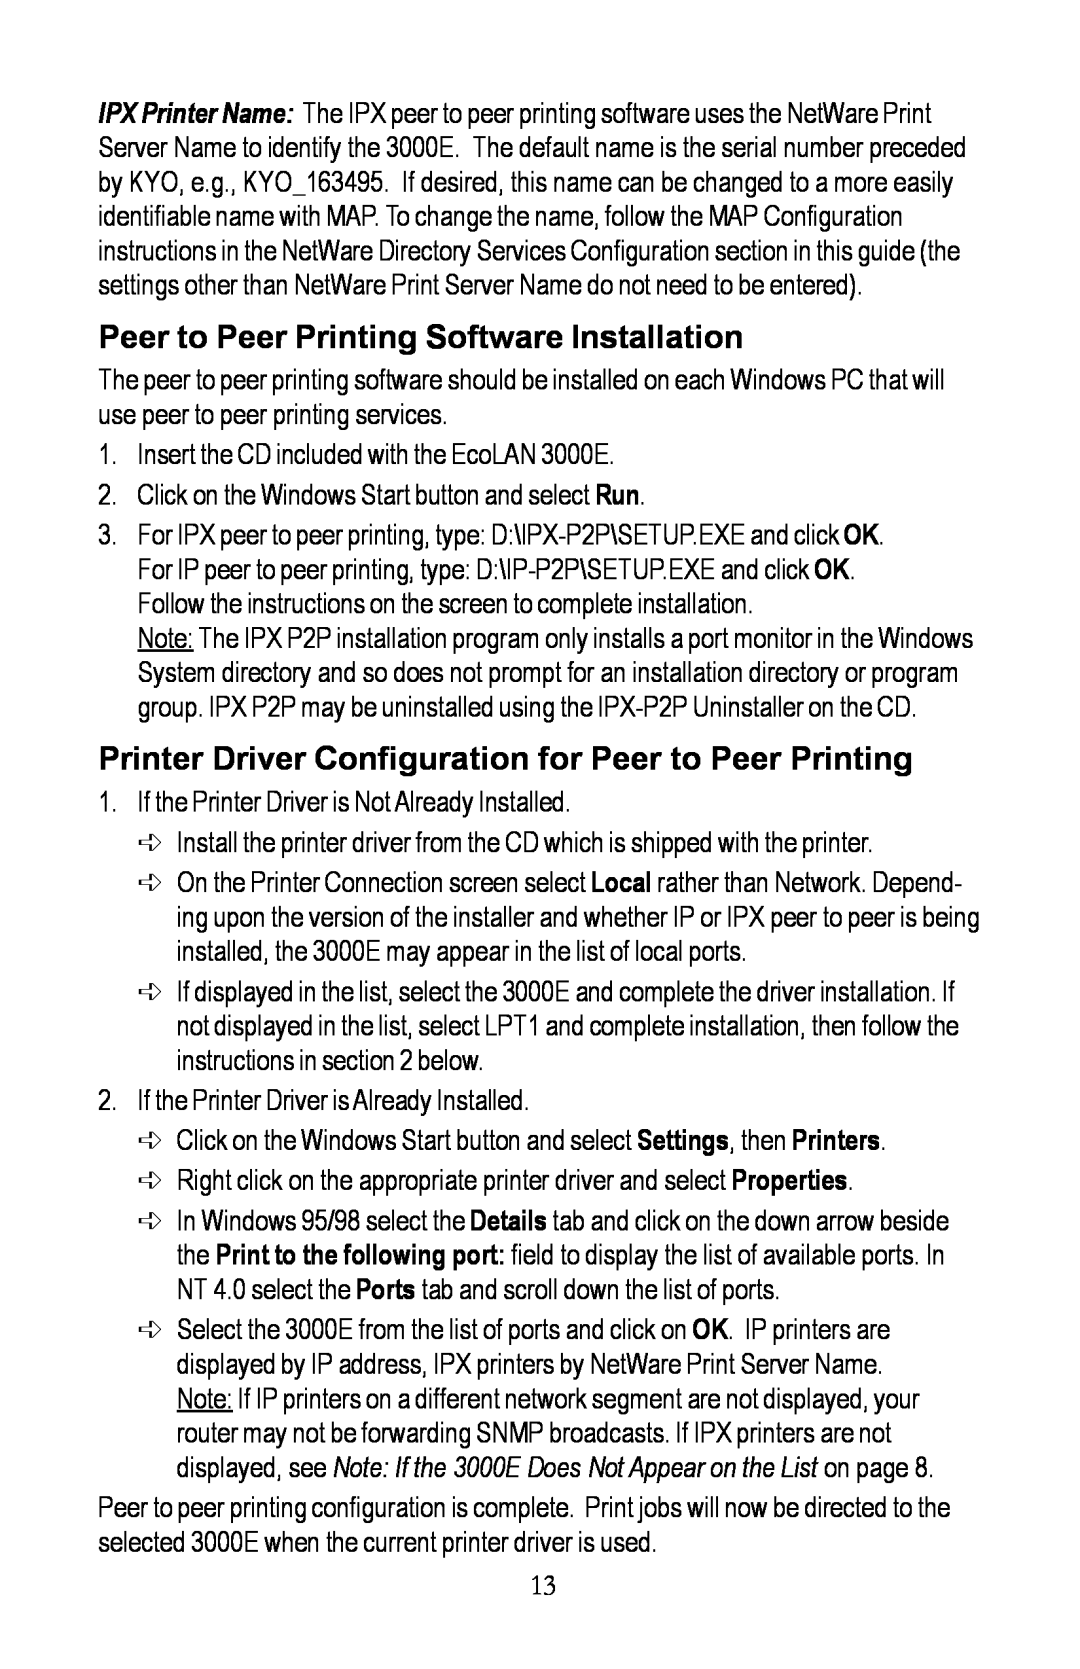 Kyocera EcoLAN 3000E manual Peer to Peer Printing Software Installation 